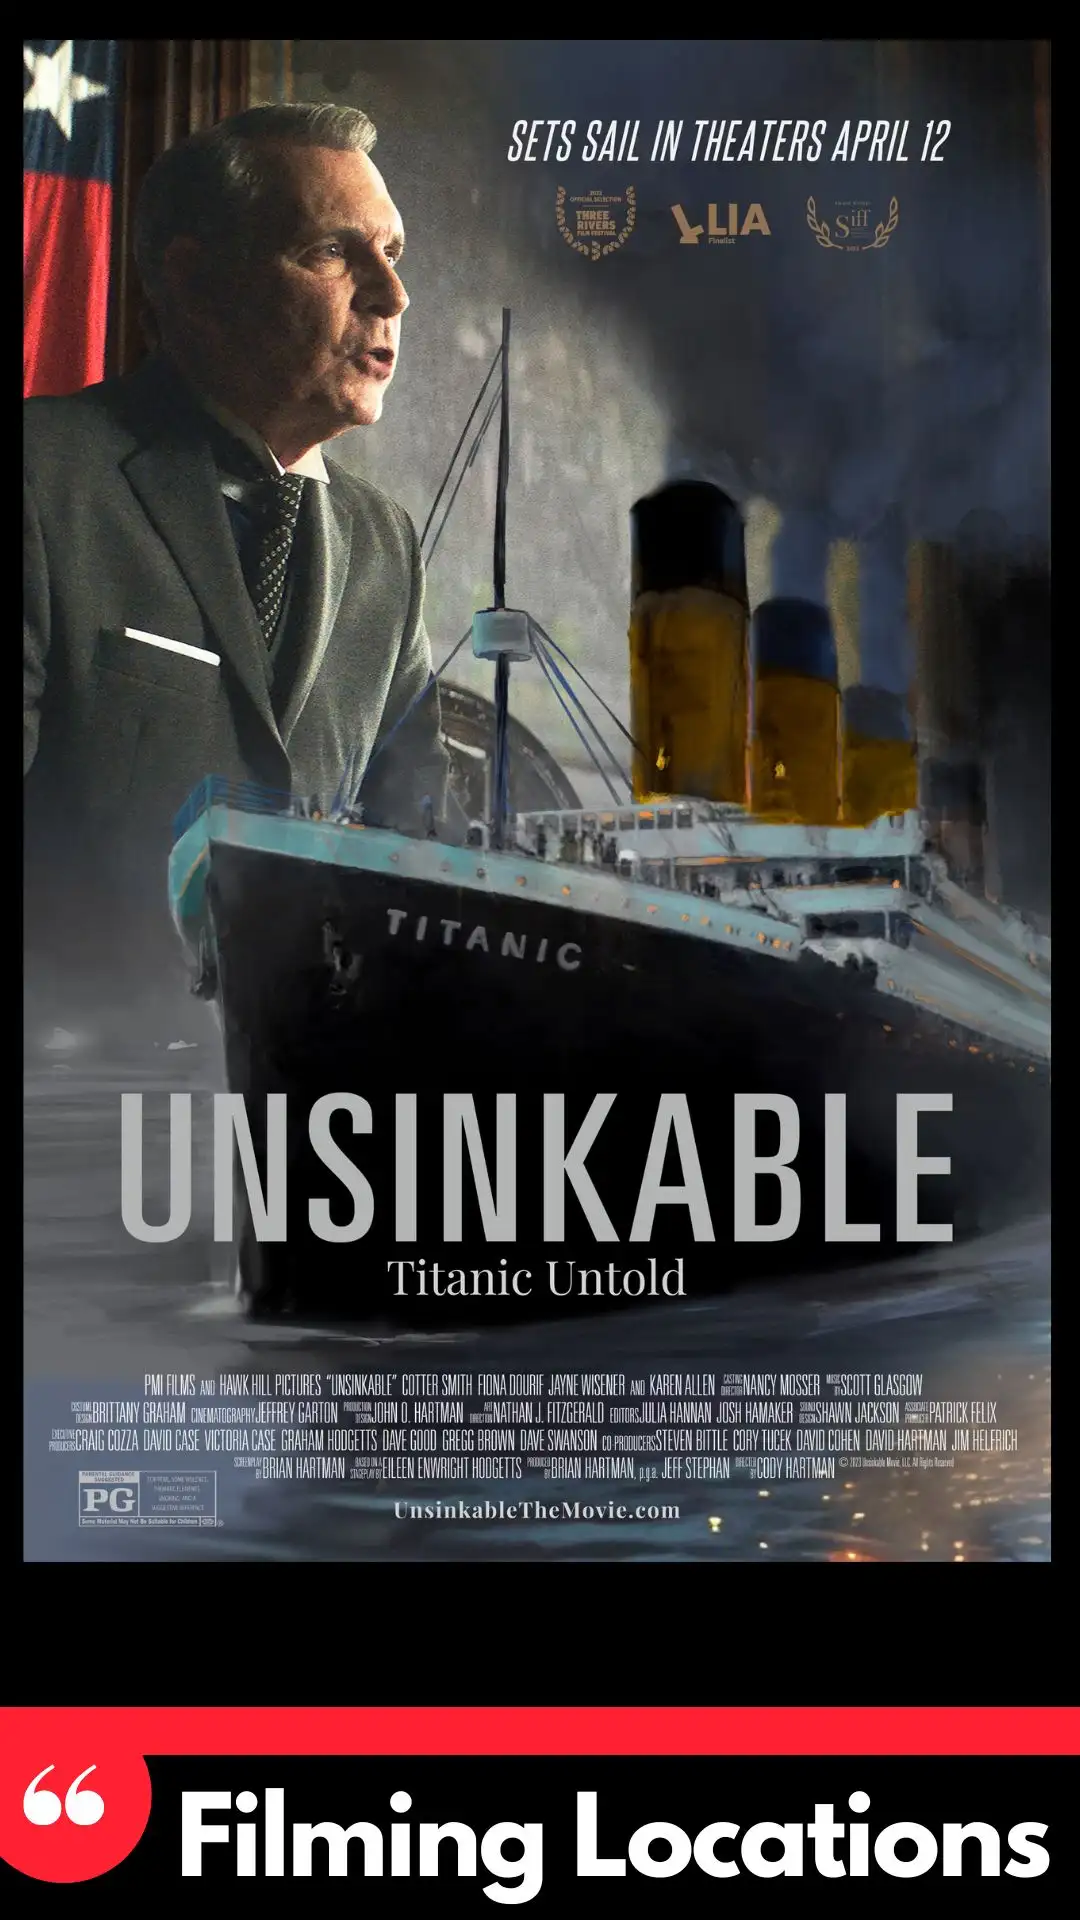 Where Is Unsinkable Filmed